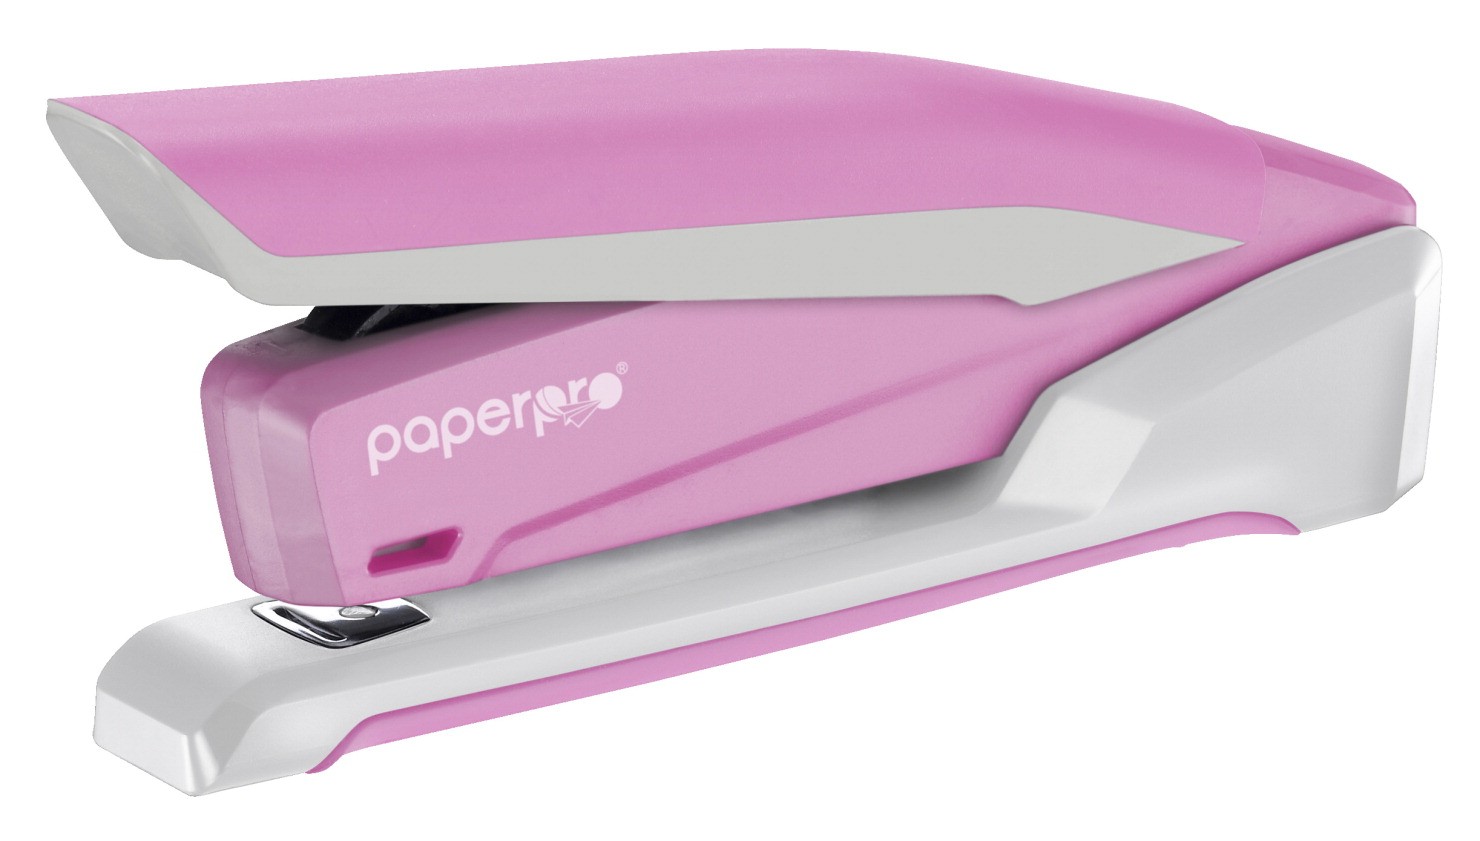 PaperPro Desktop Stapler, Pink